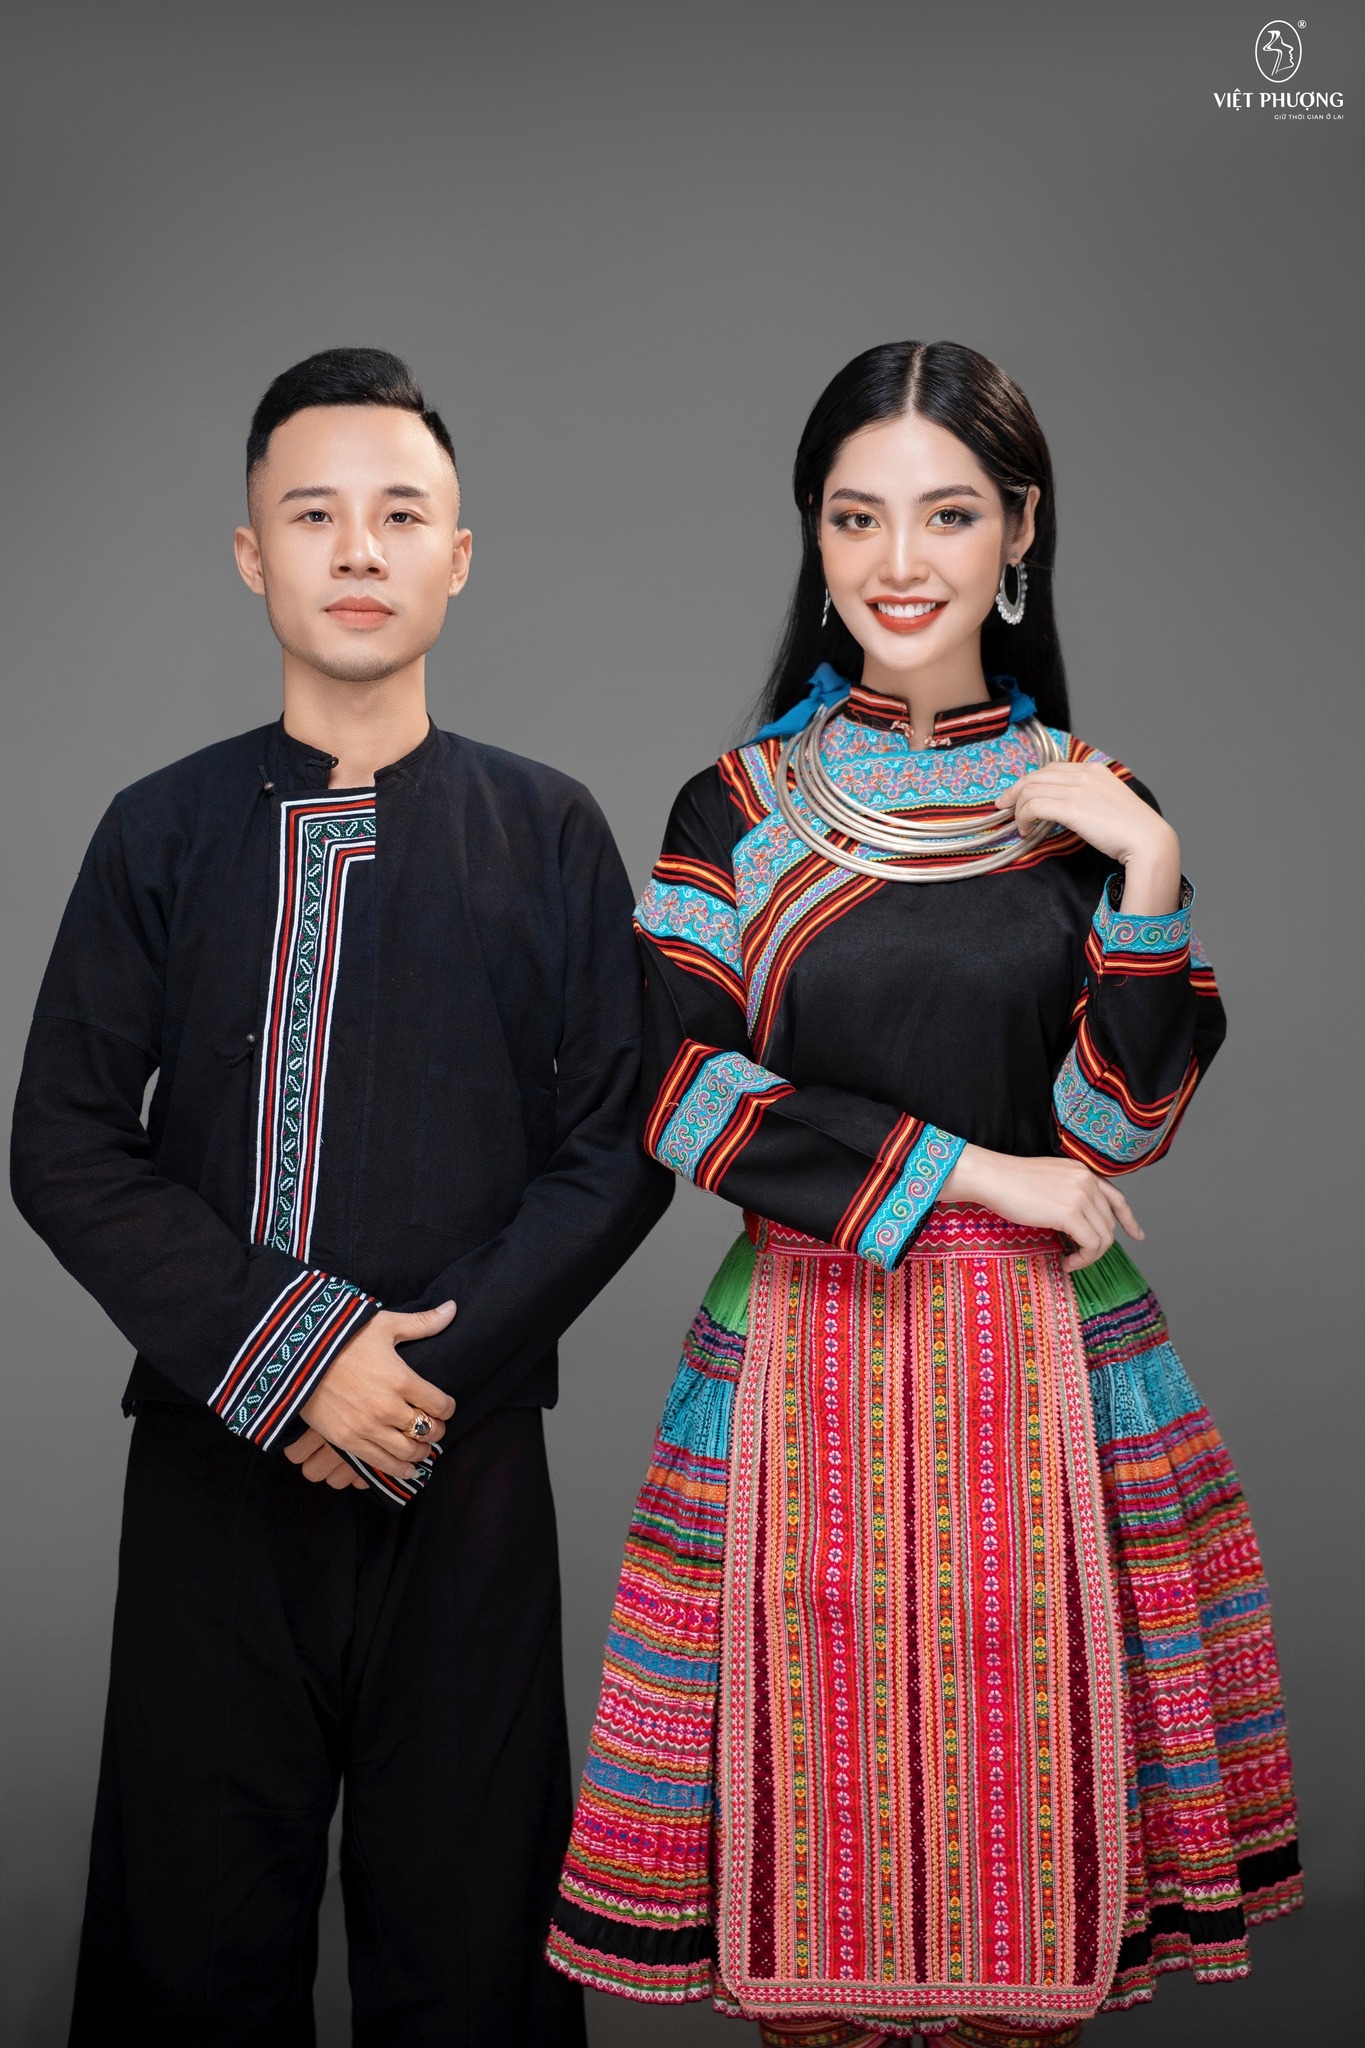 Hoa hậu Nông Thúy hằng trong trang phục truyền thống của dân tộc Mông